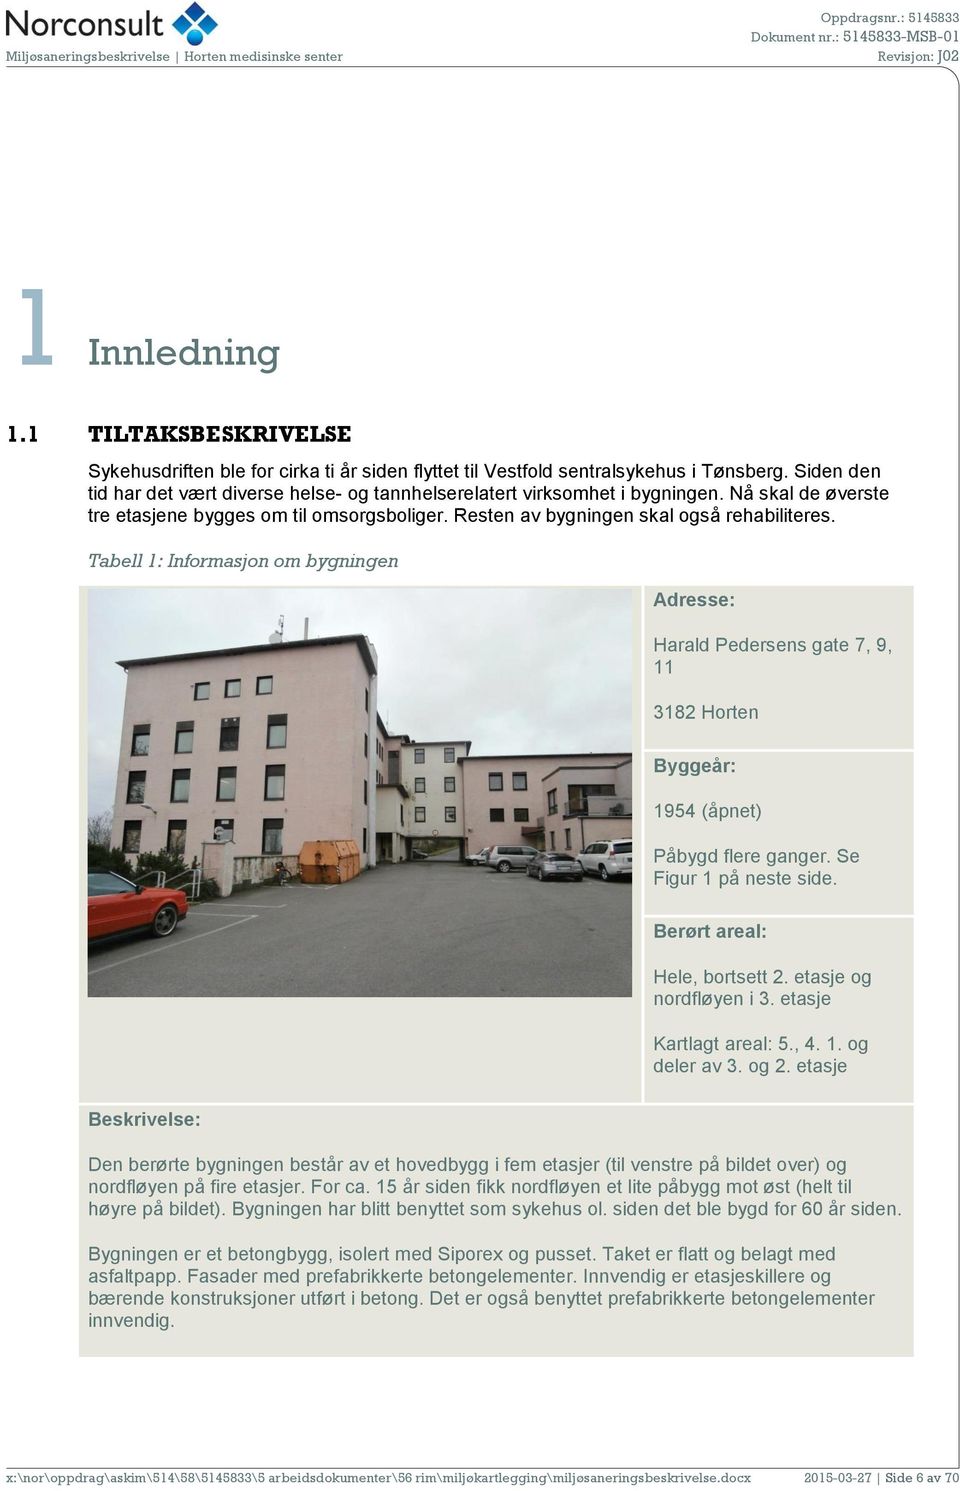 Tabell 1: Informasjon om bygningen Adresse: Harald Pedersens gate 7, 9, 11 3182 Horten Byggeår: 1954 (åpnet) Påbygd flere ganger. Se Figur 1 på neste side. Berørt areal: Hele, bortsett 2.